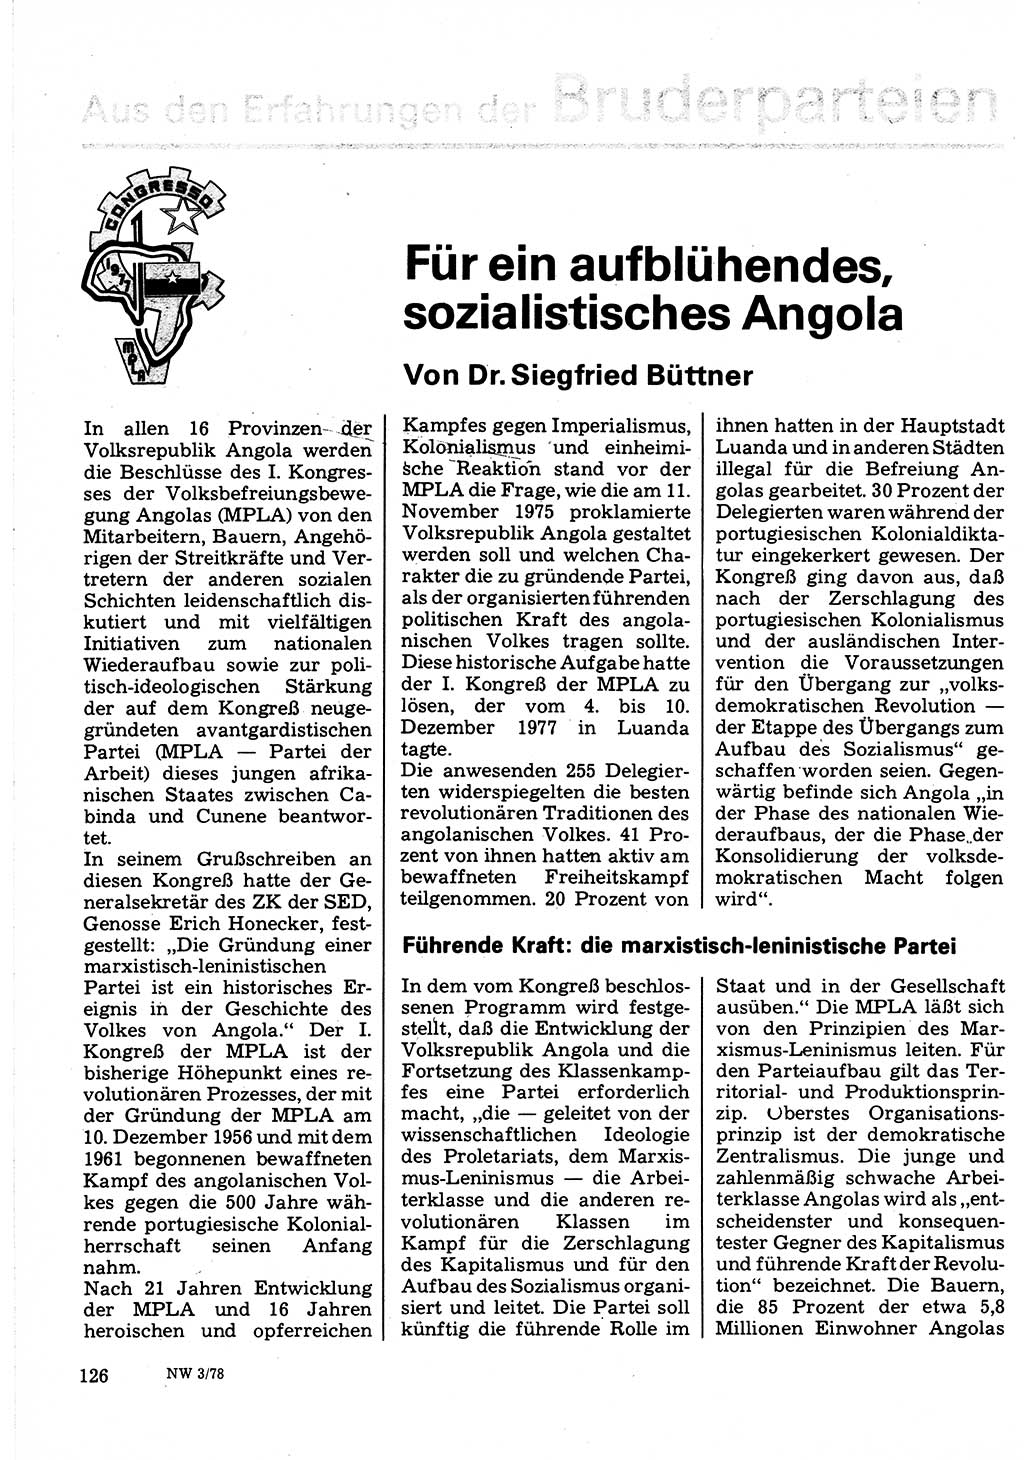 Neuer Weg (NW), Organ des Zentralkomitees (ZK) der SED (Sozialistische Einheitspartei Deutschlands) für Fragen des Parteilebens, 33. Jahrgang [Deutsche Demokratische Republik (DDR)] 1978, Seite 126 (NW ZK SED DDR 1978, S. 126)